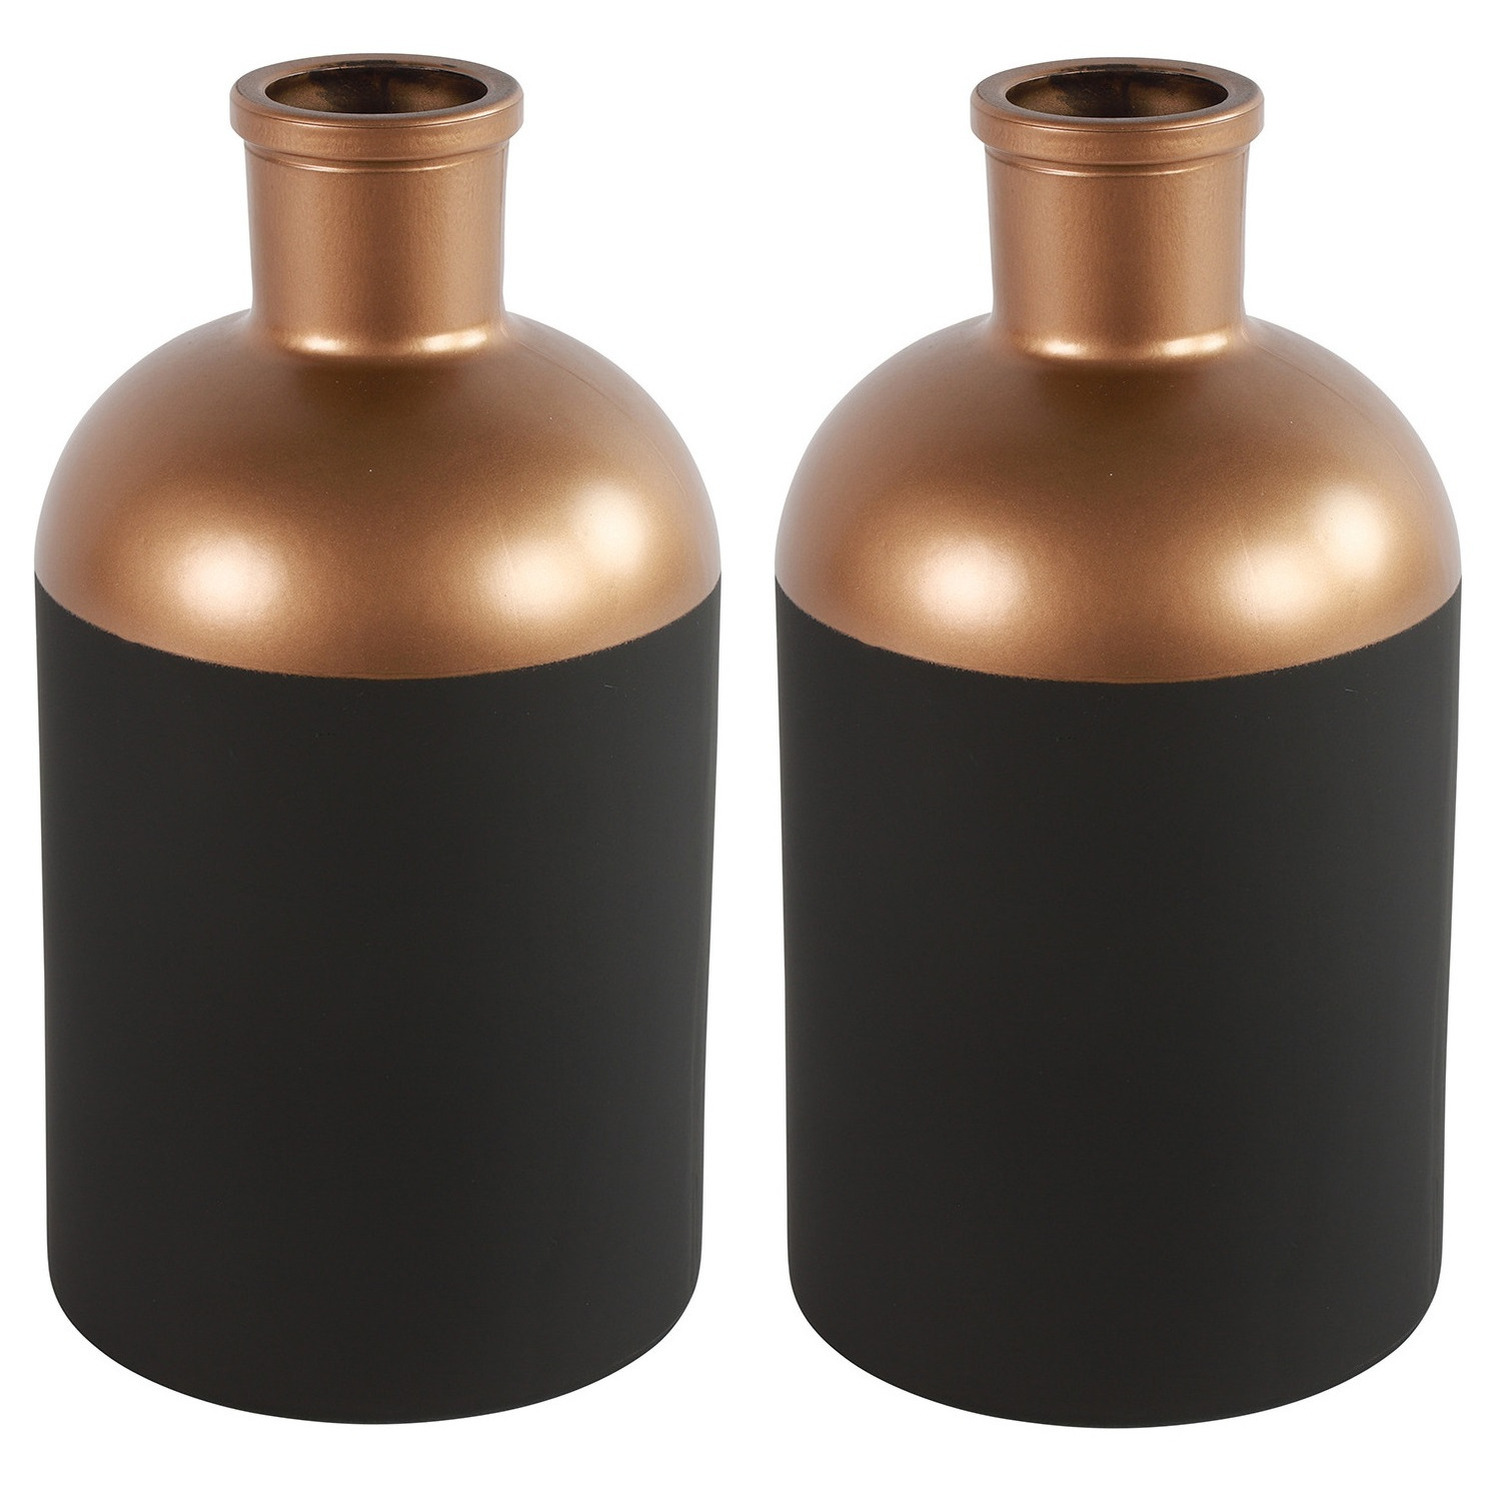 Countryfield Bloemen-deco vaas 2x zwart-koper glas luxe fles vorm D14x H26 cm